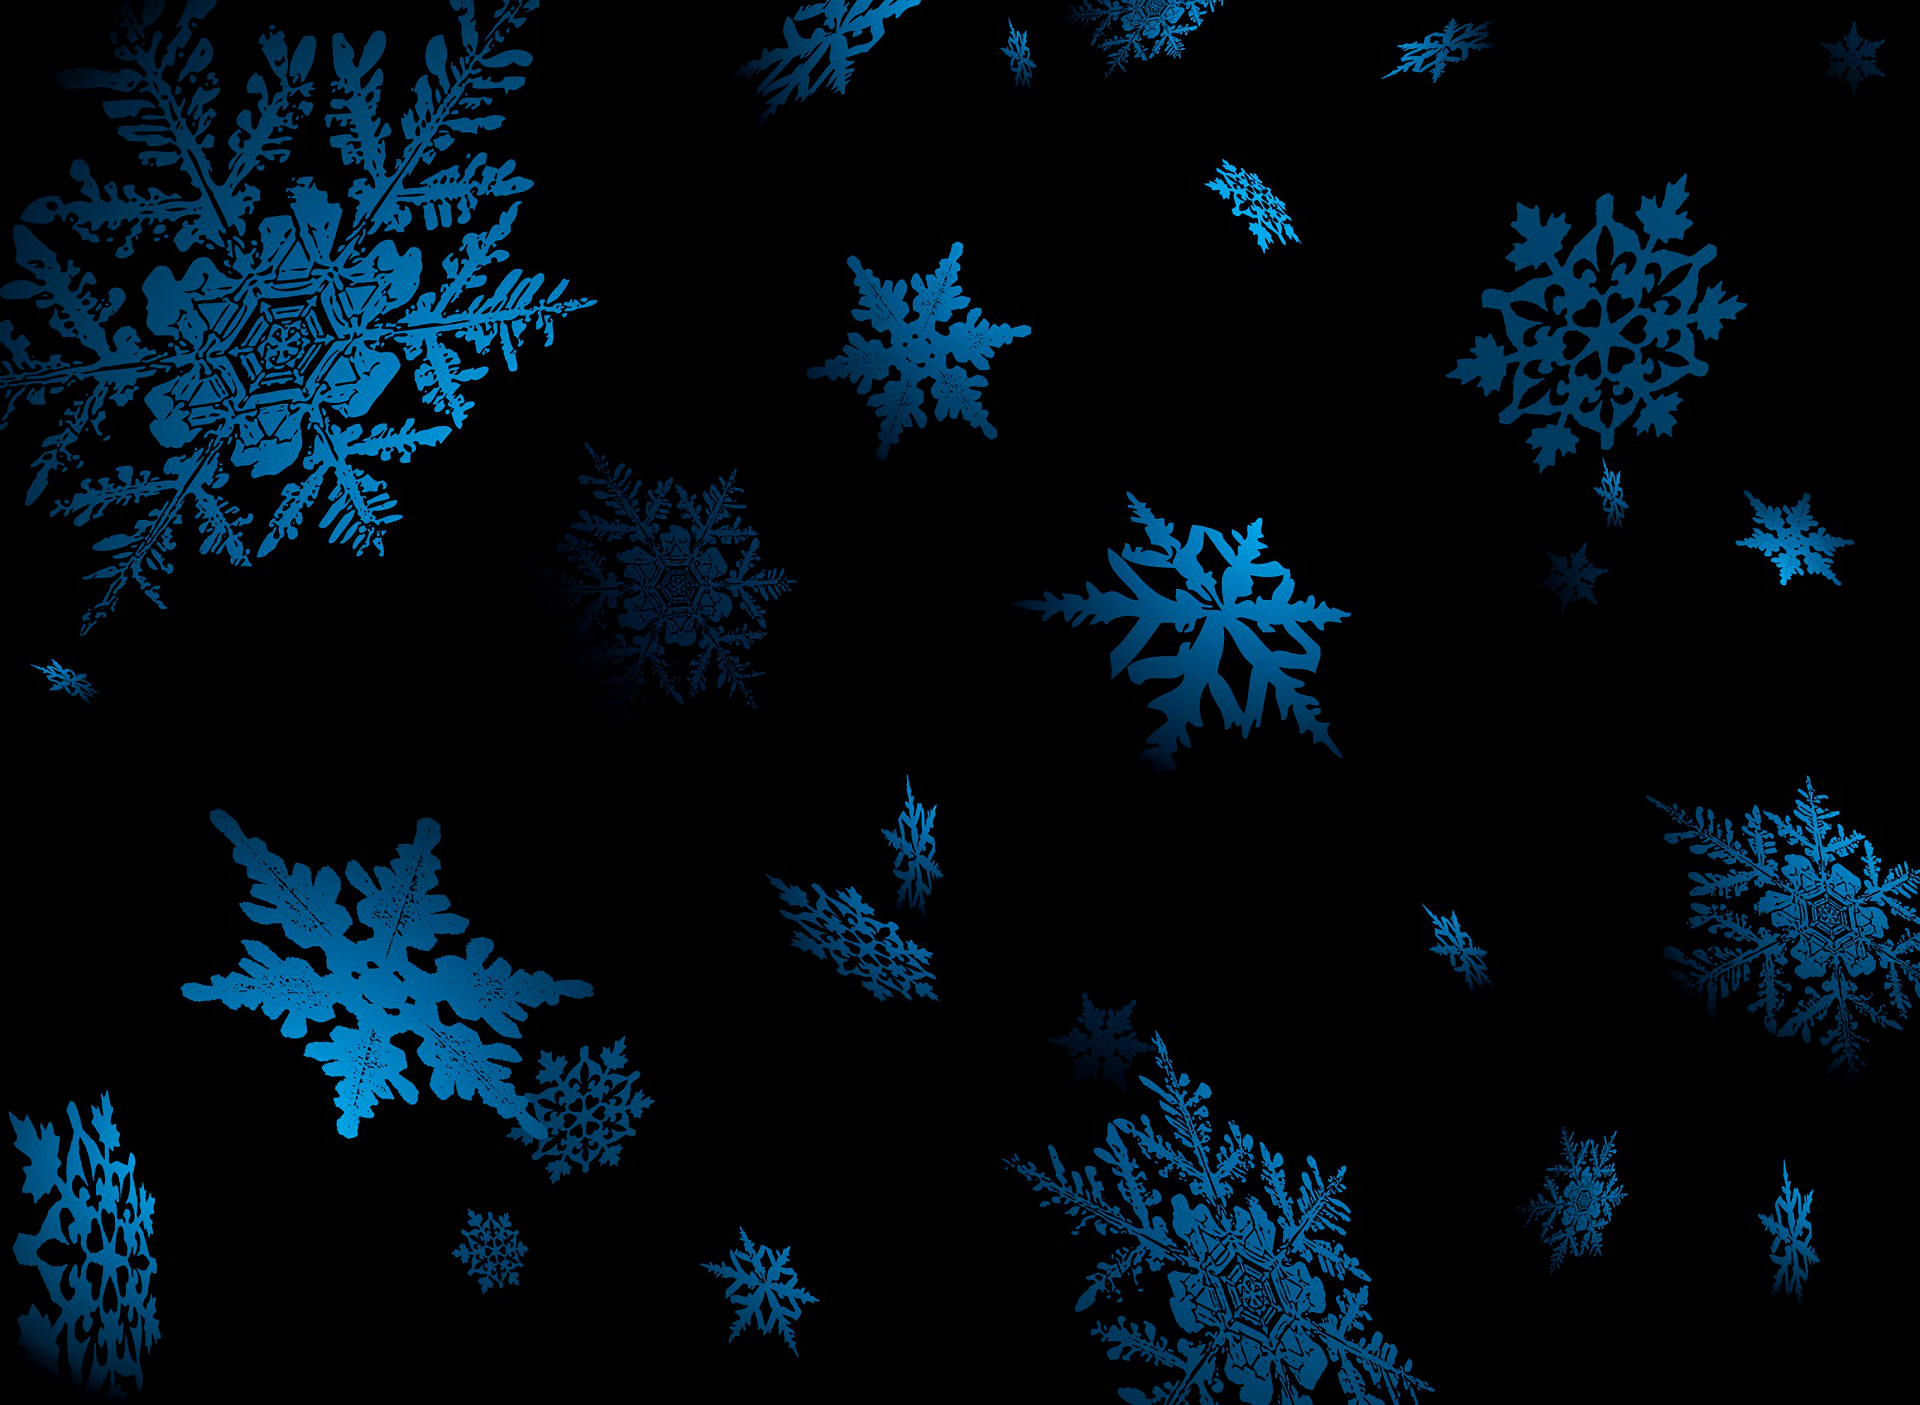 Snowflake Wallpaper HD  PixelsTalkNet